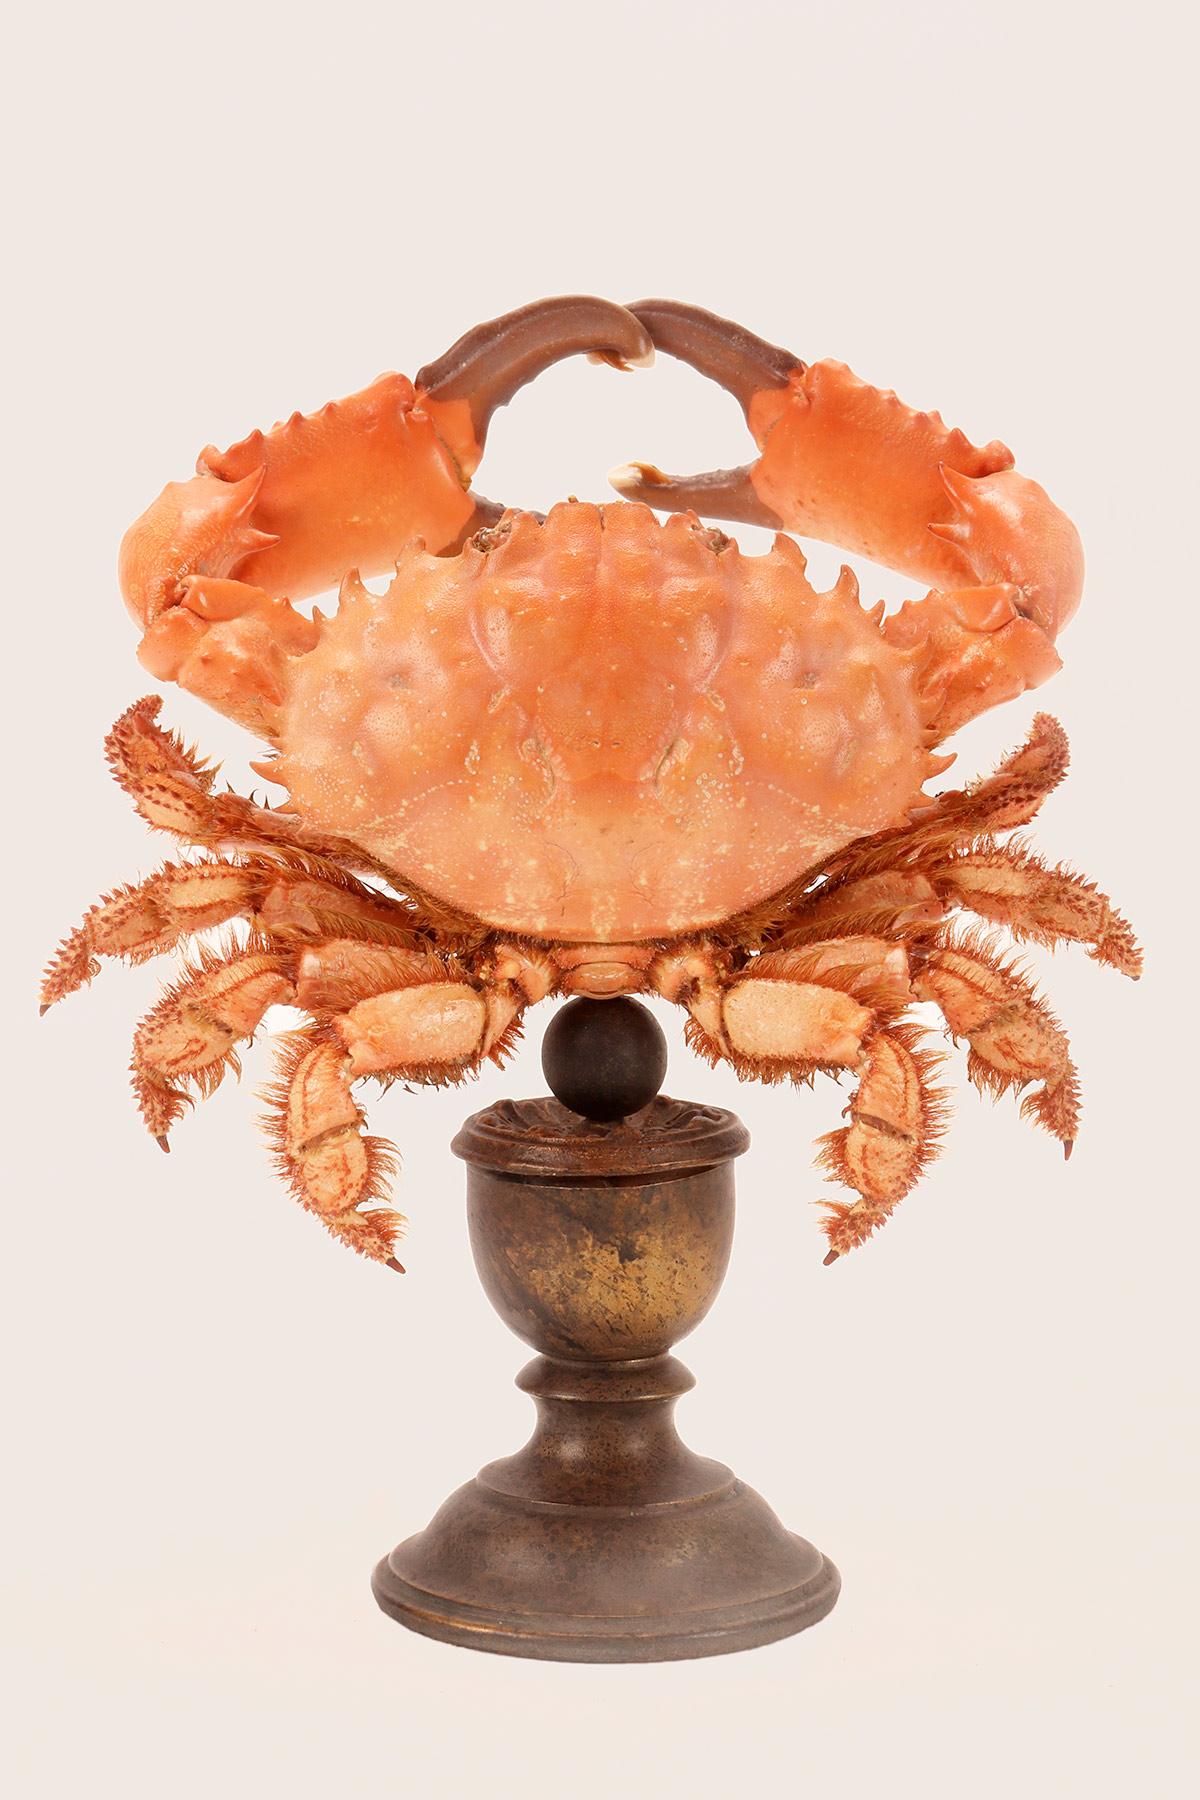 Ein Paar Meereskrabben. Das Exemplar, Splendid Round Red Crab (Etisus Splendidus), steht auf einem vasenförmigen, braun lackierten Holzsockel. Italien, Ende des 19. Jahrhunderts. (Auch separat erhältlich)